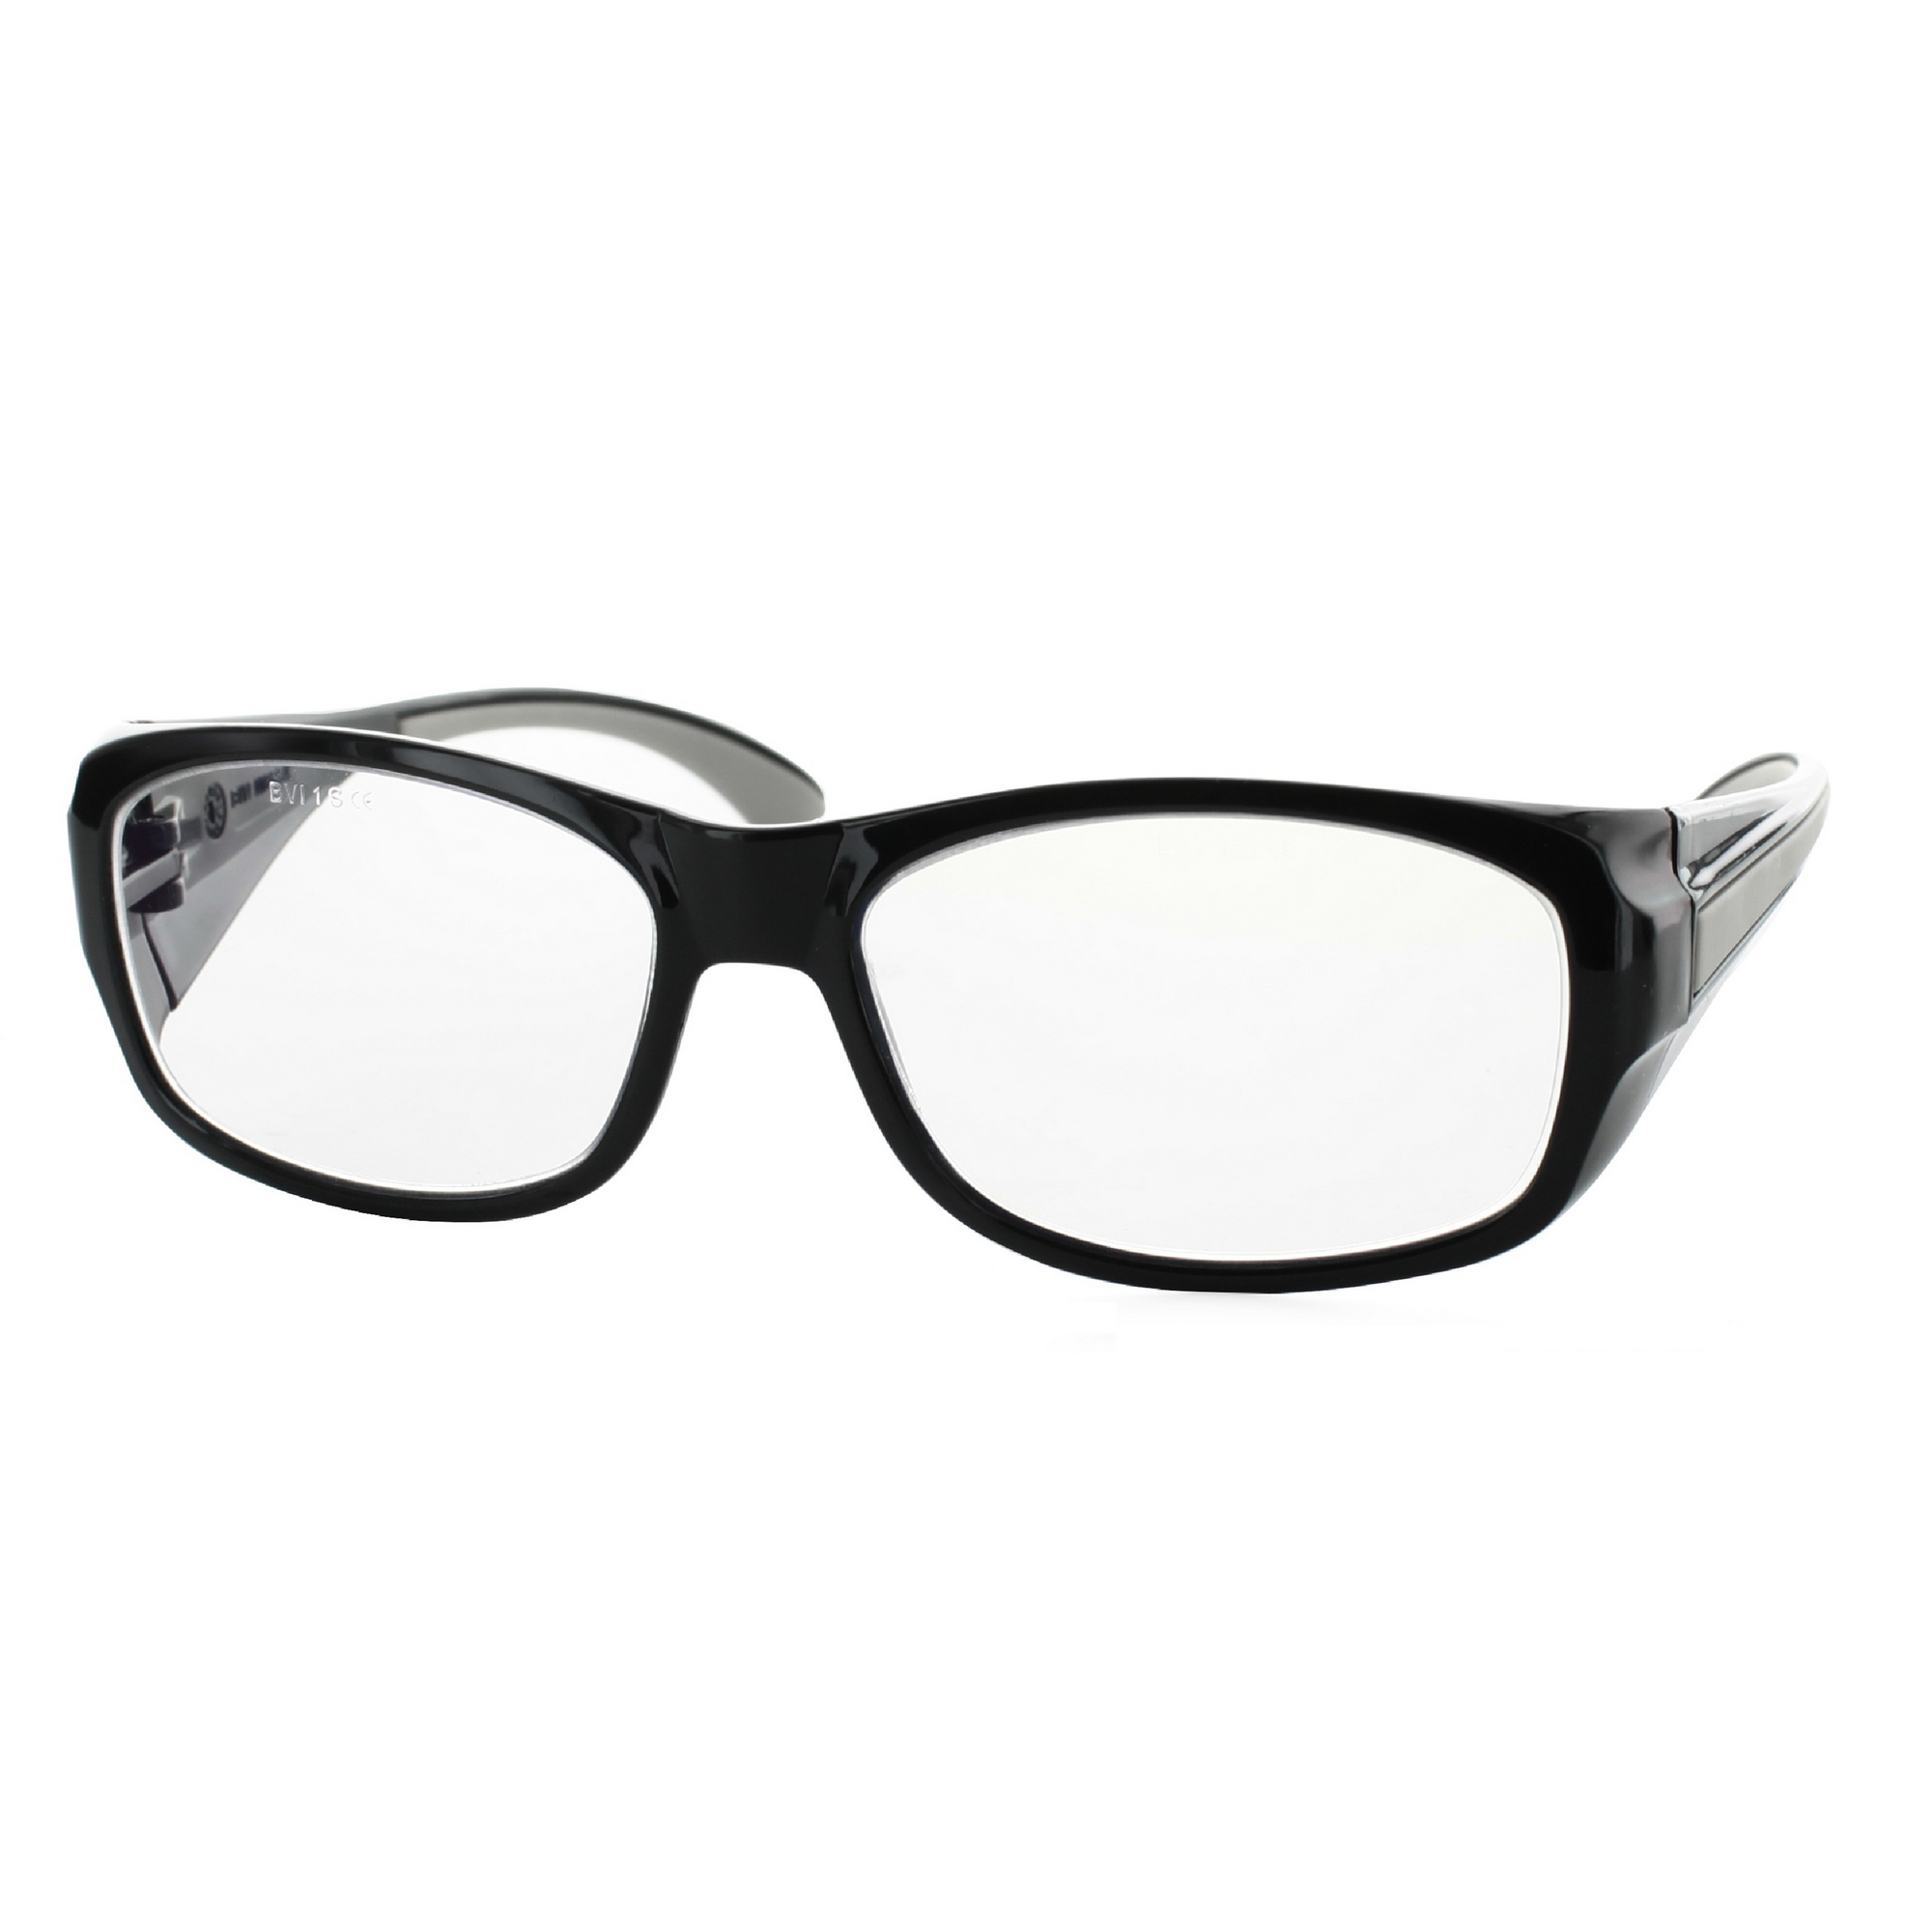 Multidistanz-Schutzbrille 'Tech 3in1 150' schwarz + 1,50 Dioptrien + product picture